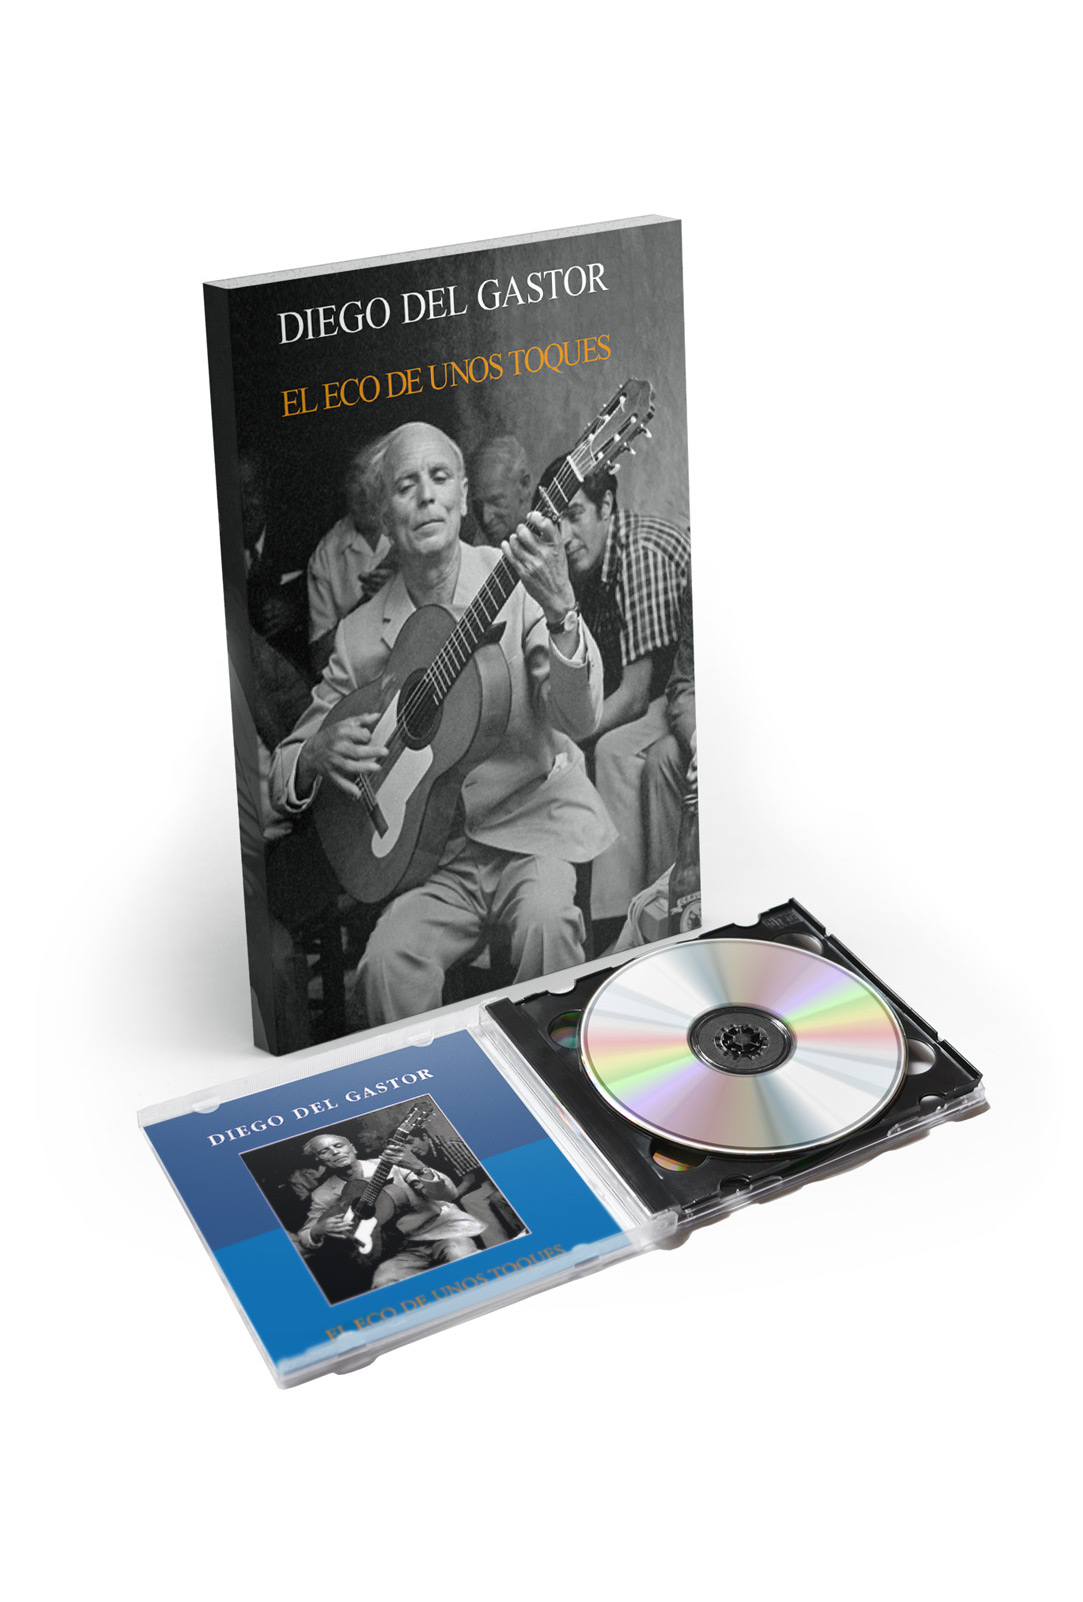 Diego del Gastor - El eco de unos toques - Livre CD